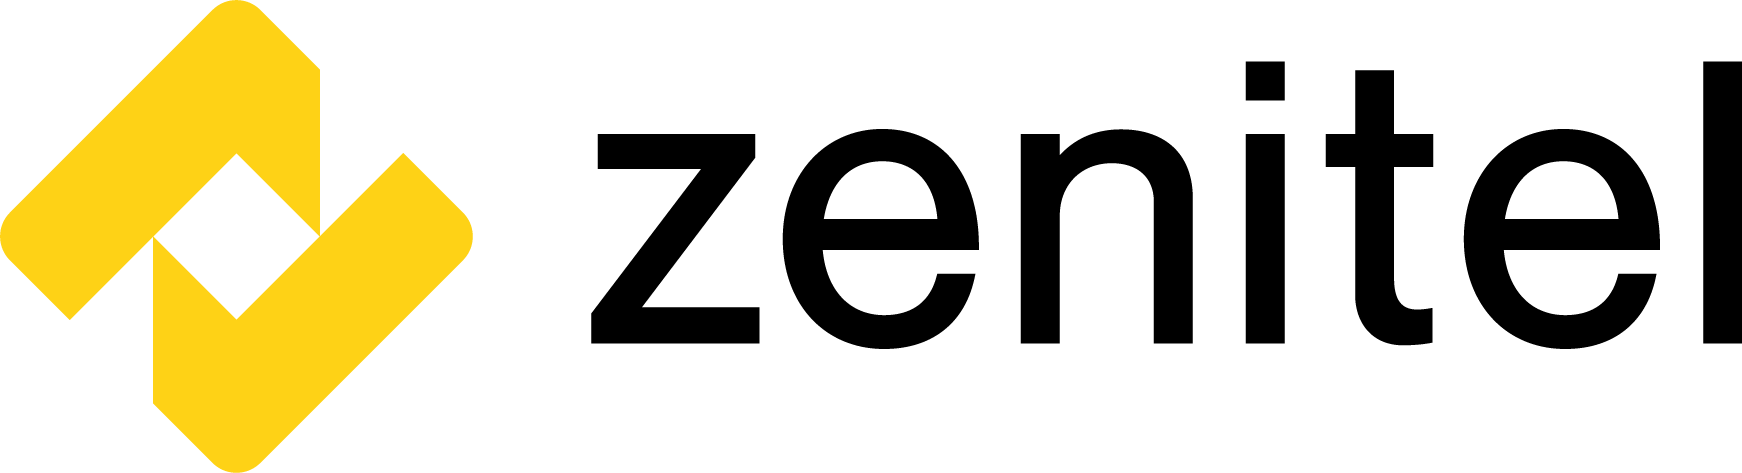 Zenitel logo i gul og sort